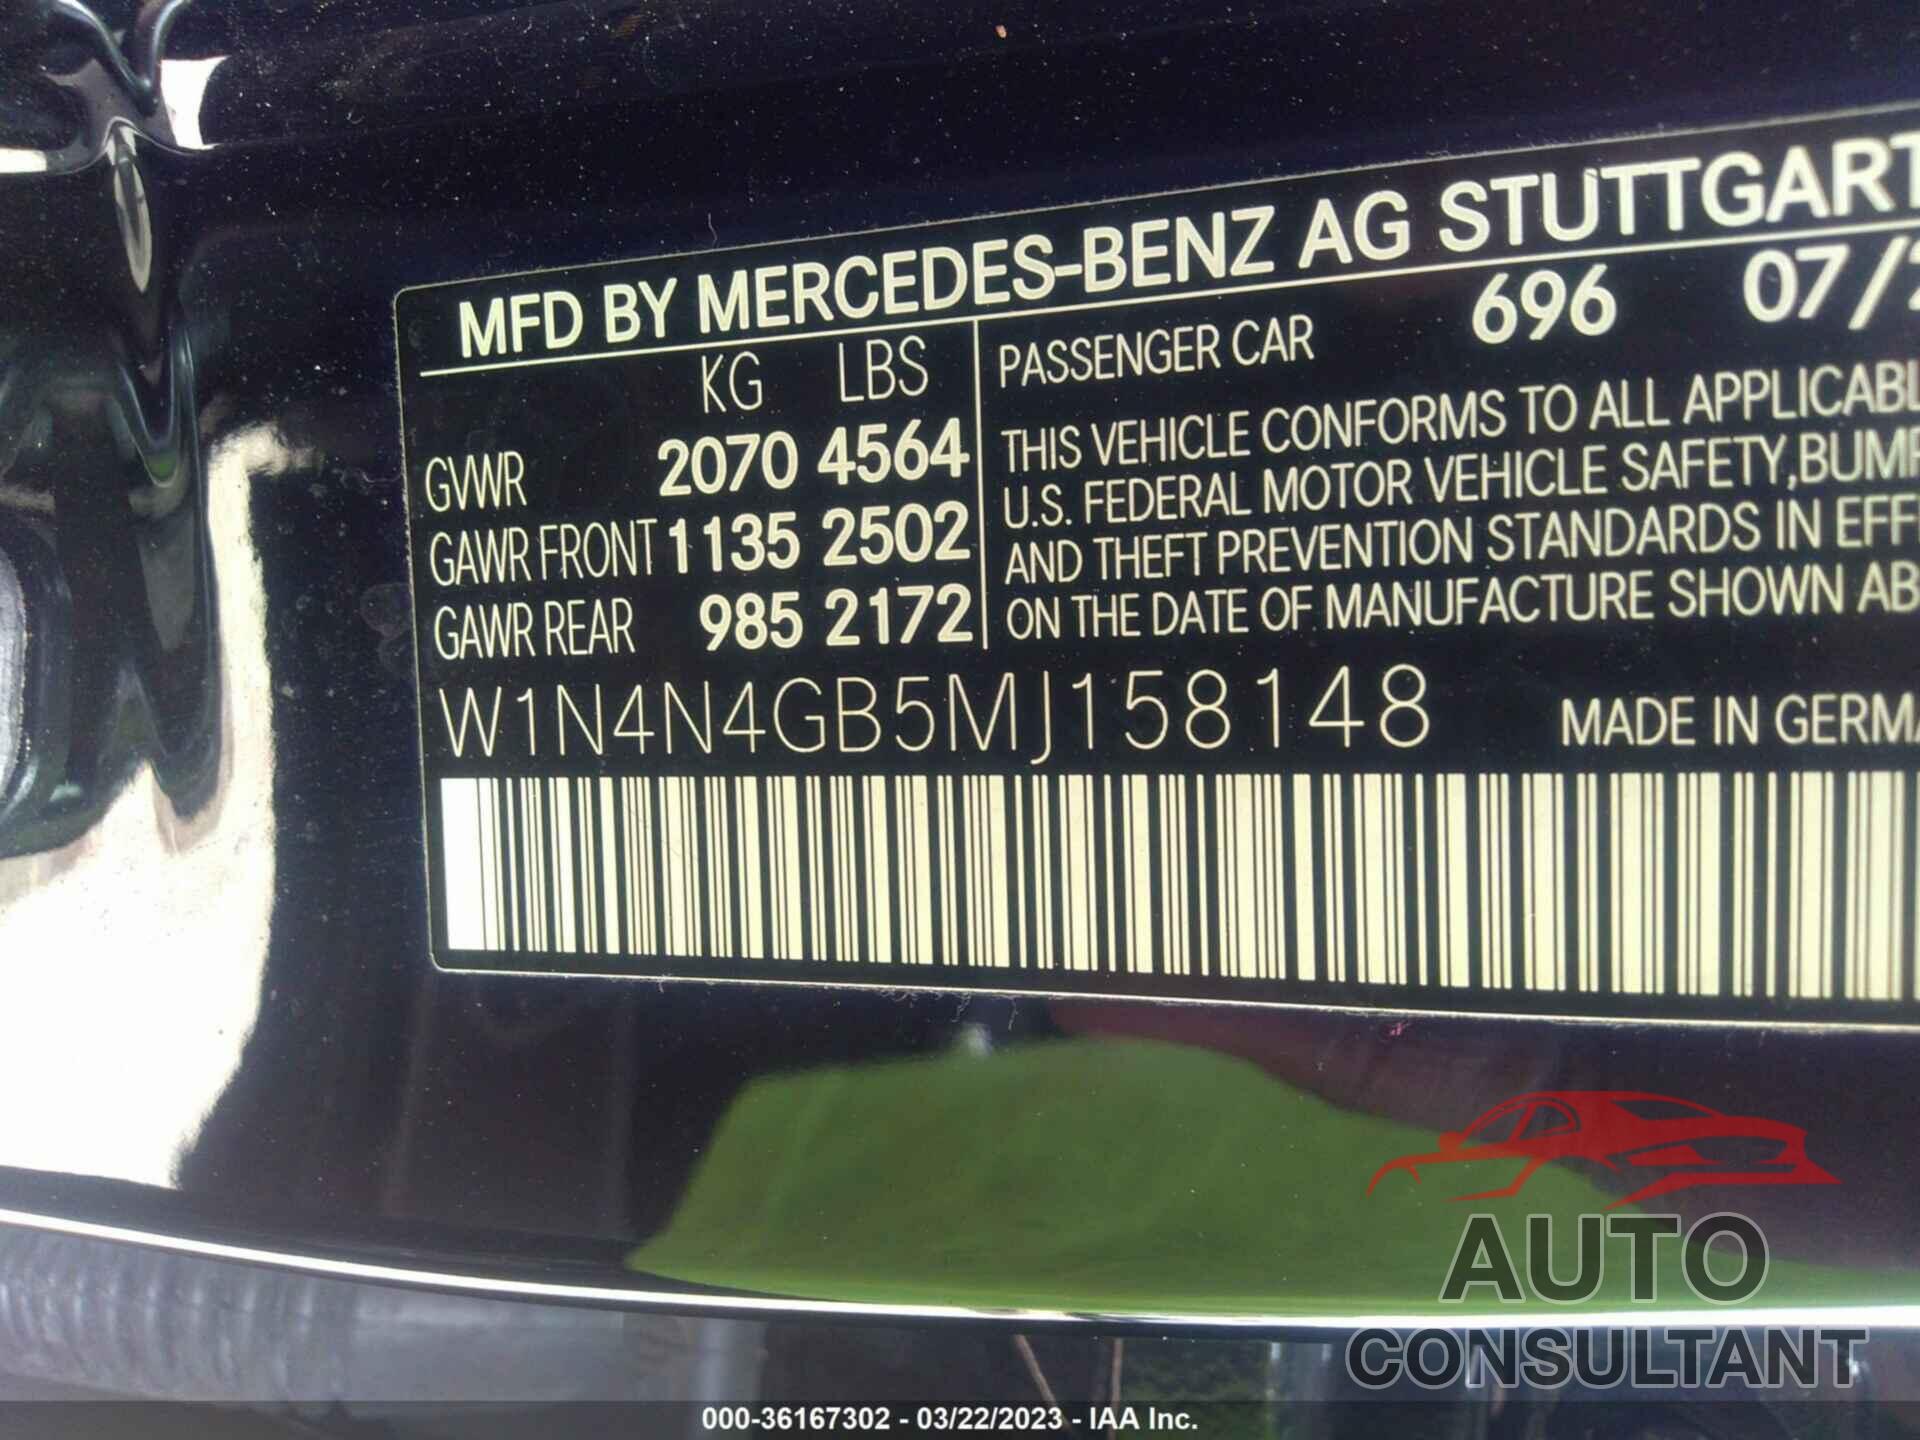 MERCEDES-BENZ GLA 2021 - W1N4N4GB5MJ158148